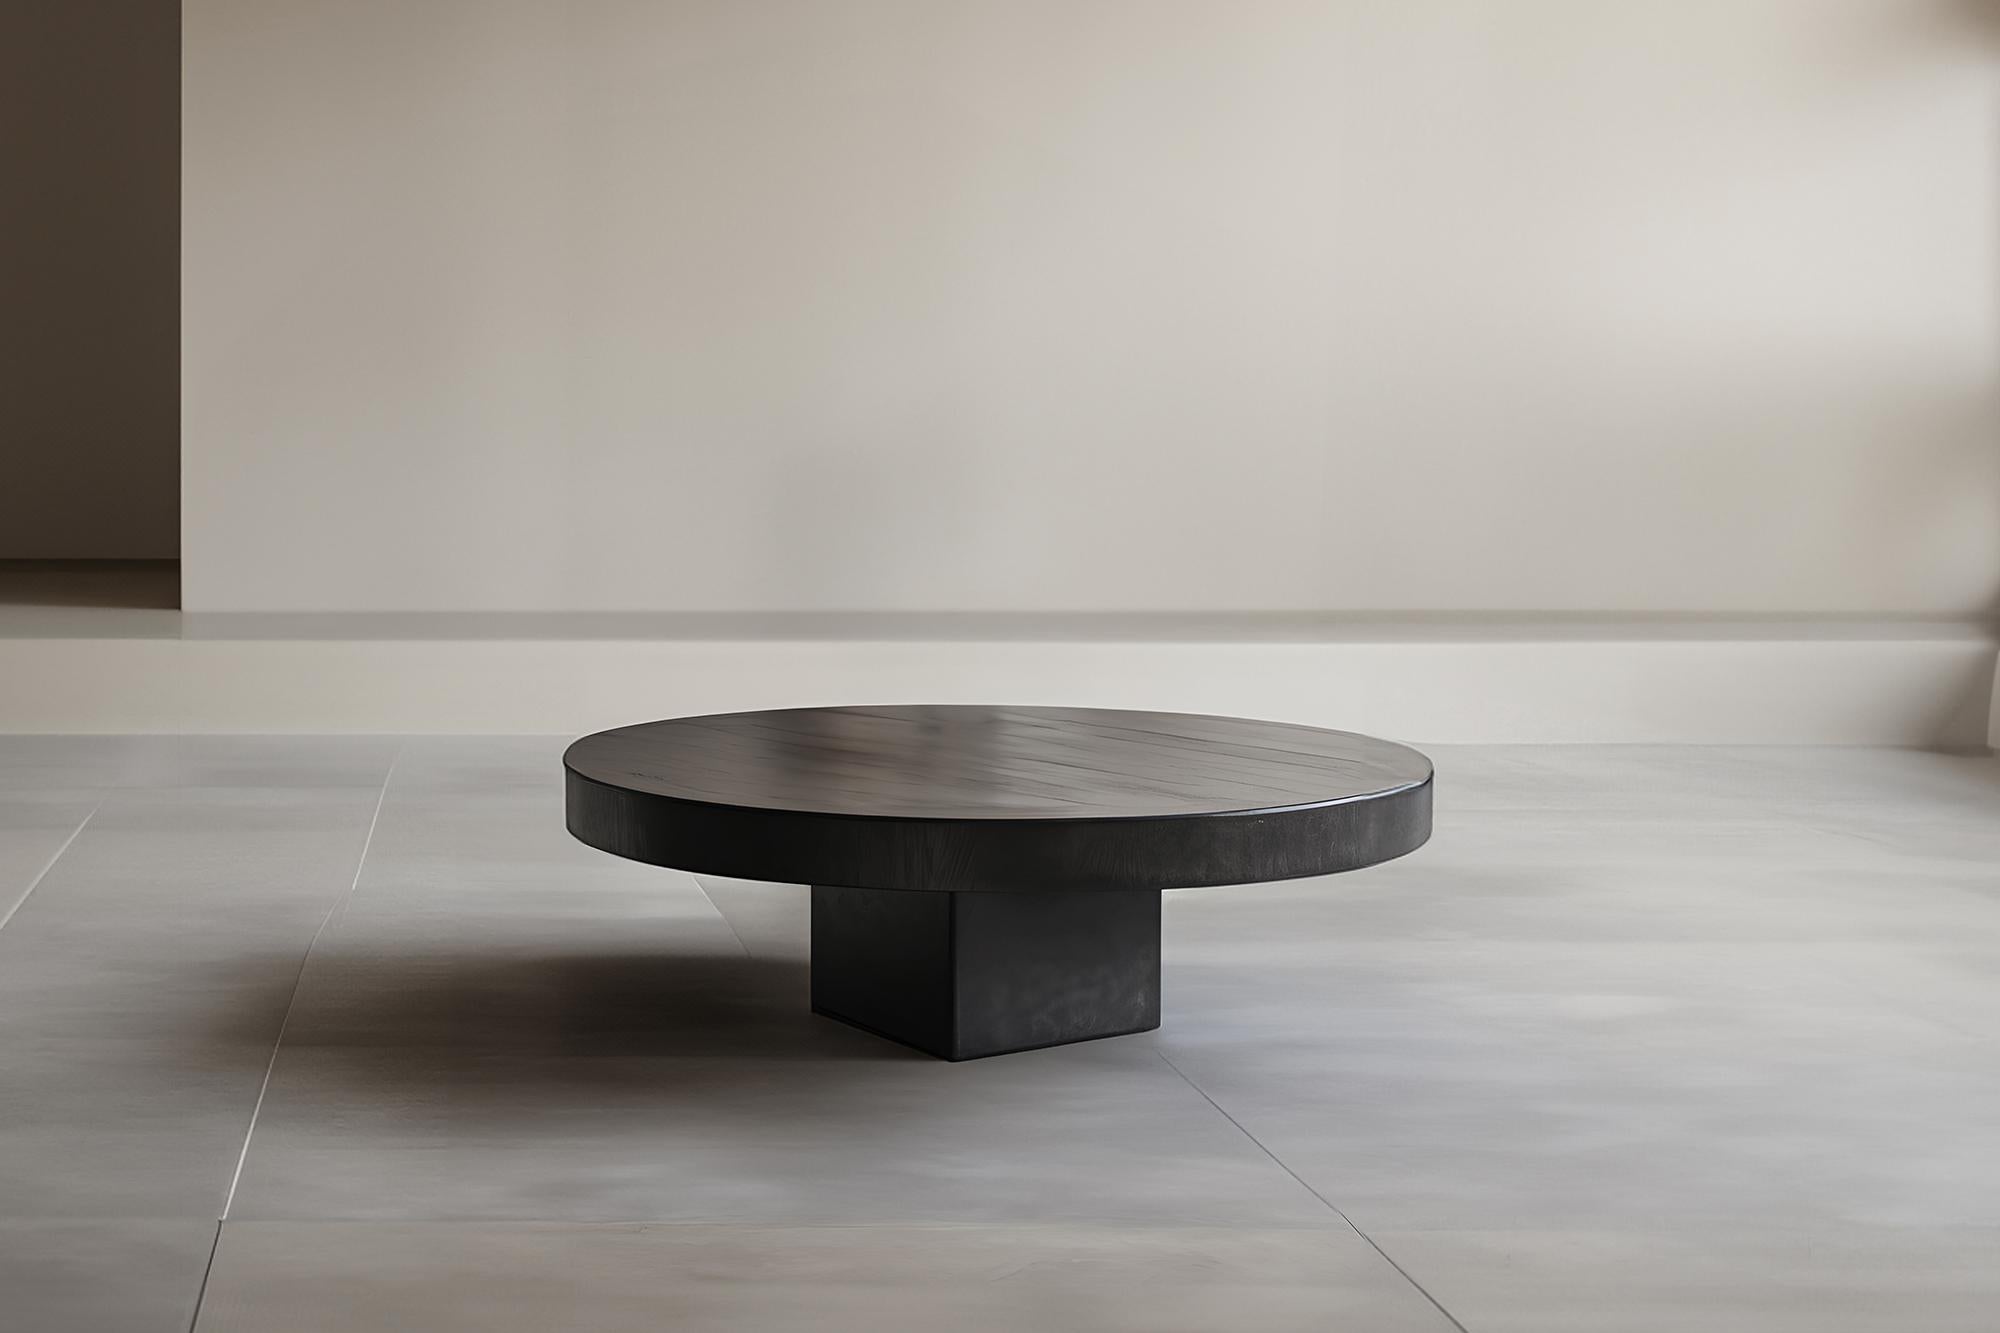 Table basse ronde chic teintée noire - Urban Fundamenta 27 par NONO

Table basse sculpturale en bois massif avec une finition naturelle à base d'eau ou teintée en noir. En raison de la nature du processus de production, chaque pièce peut varier en